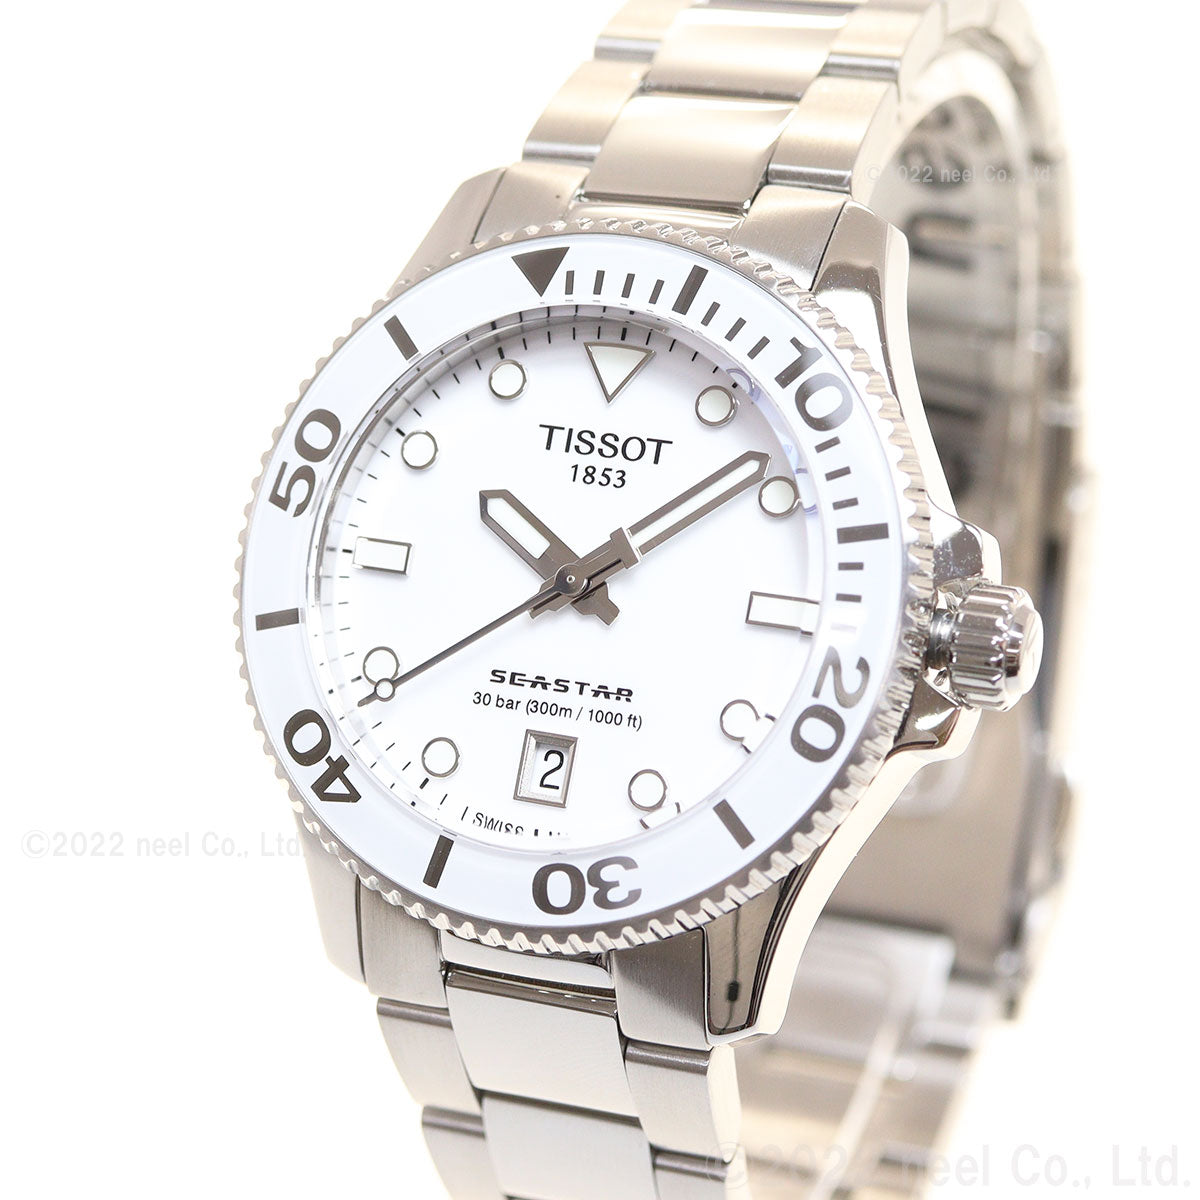 ティソ TISSOT 腕時計 メンズ レディース シースター 1000 クオーツ 36mm SEASTAR 1000 QUARTZ T120.210.11.011.00